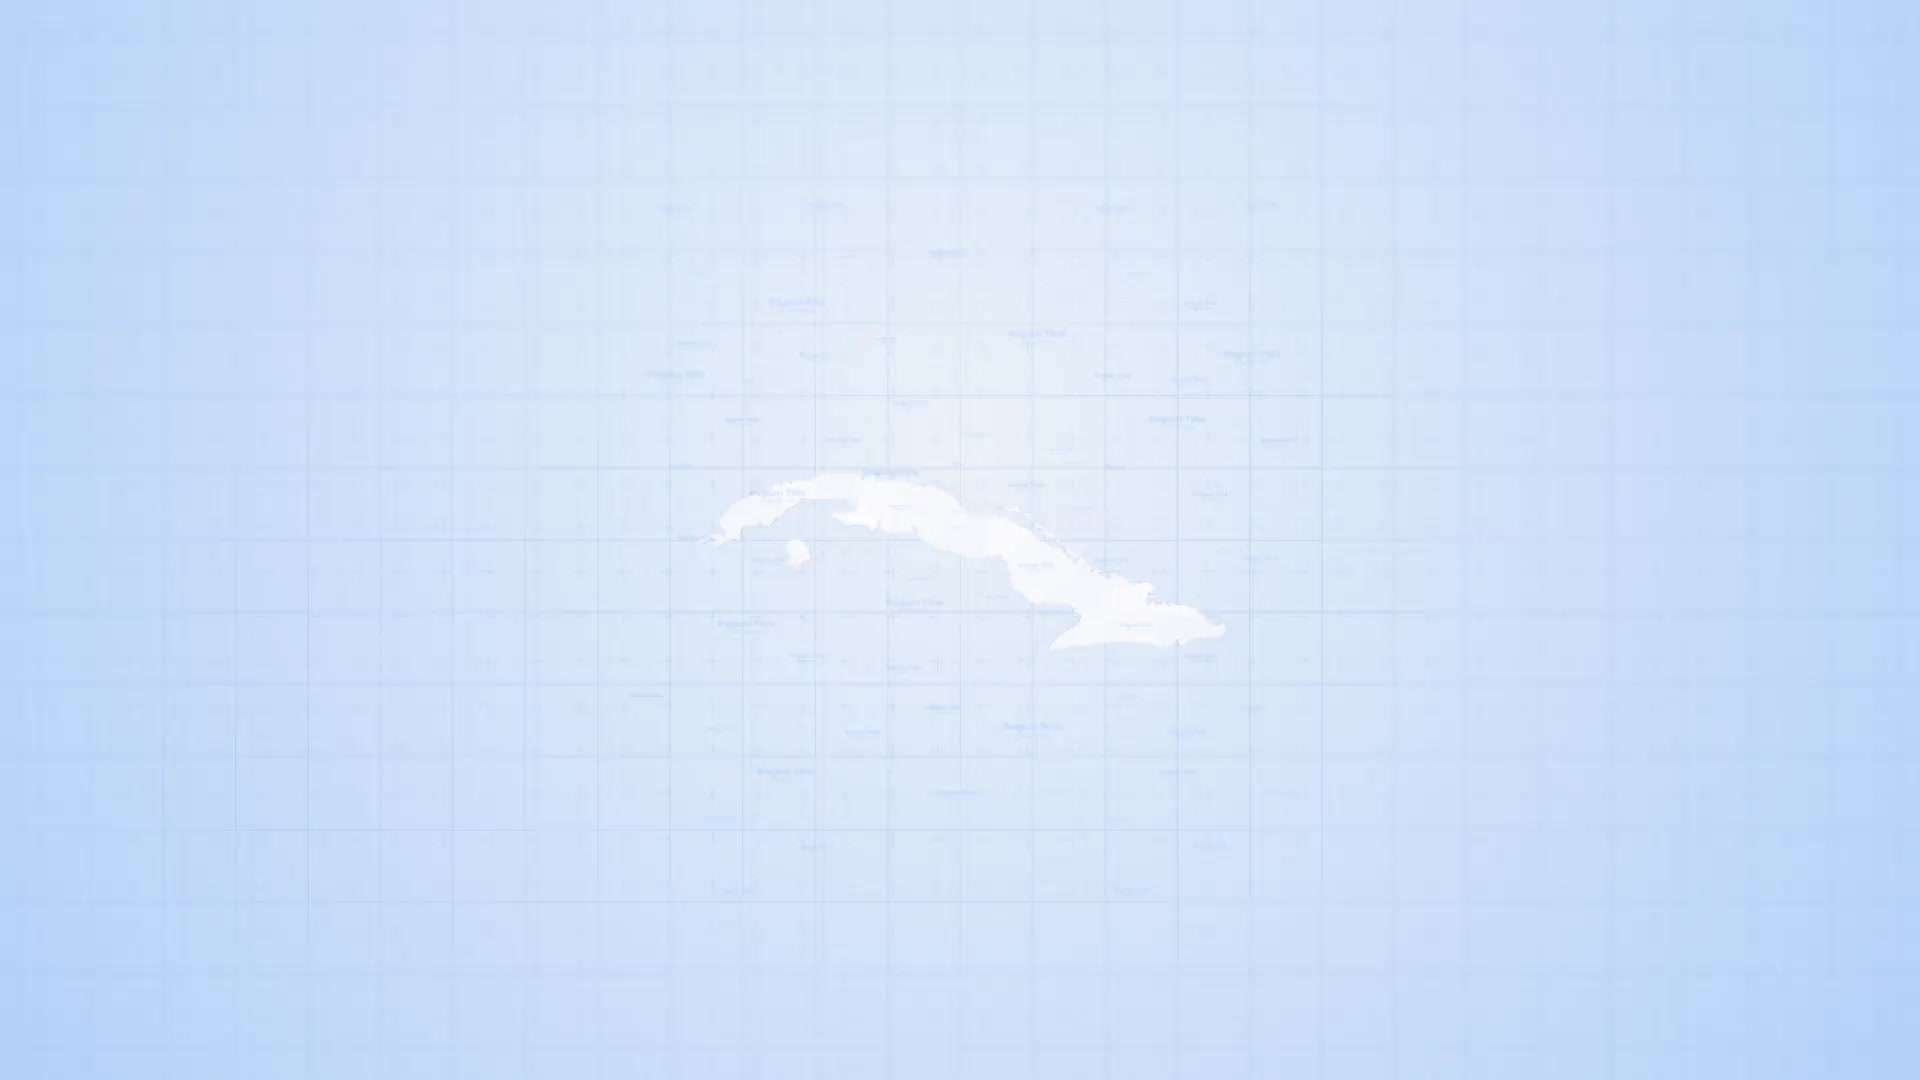 AE模板 | 古巴地图工具包动态动画展示古巴共和国旅游地图